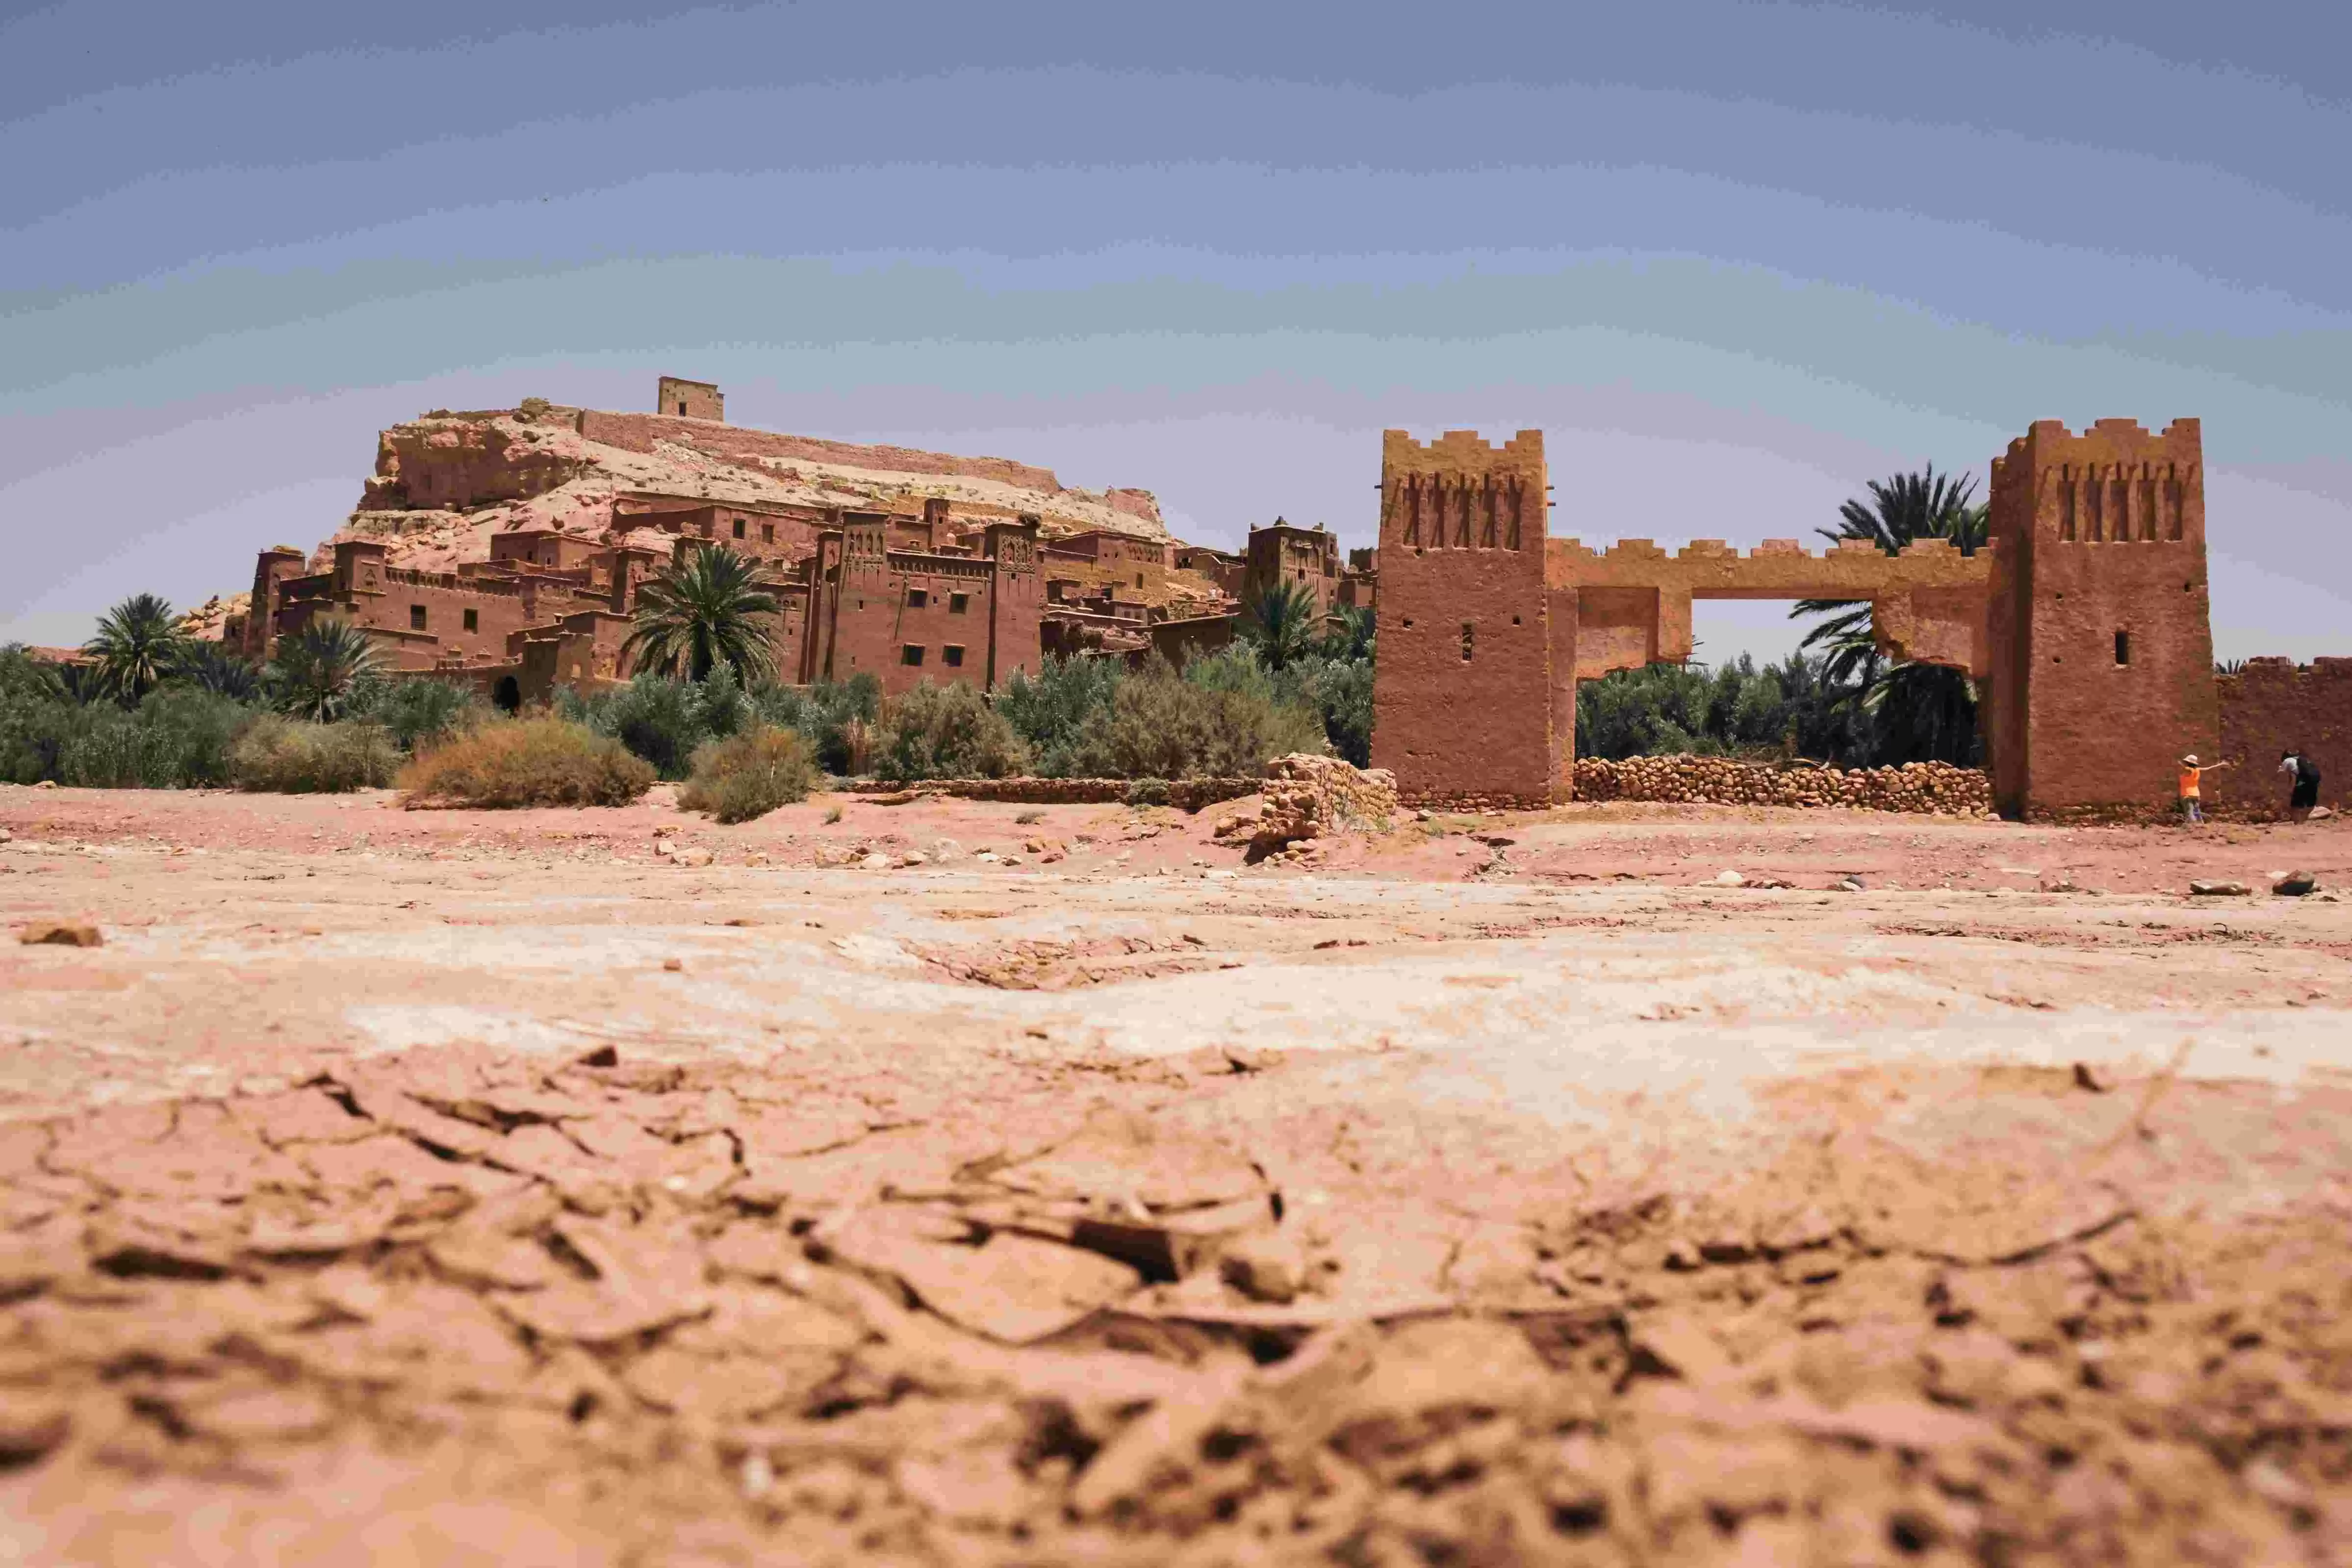 Excursión a Ouarzazate desde Marrakech